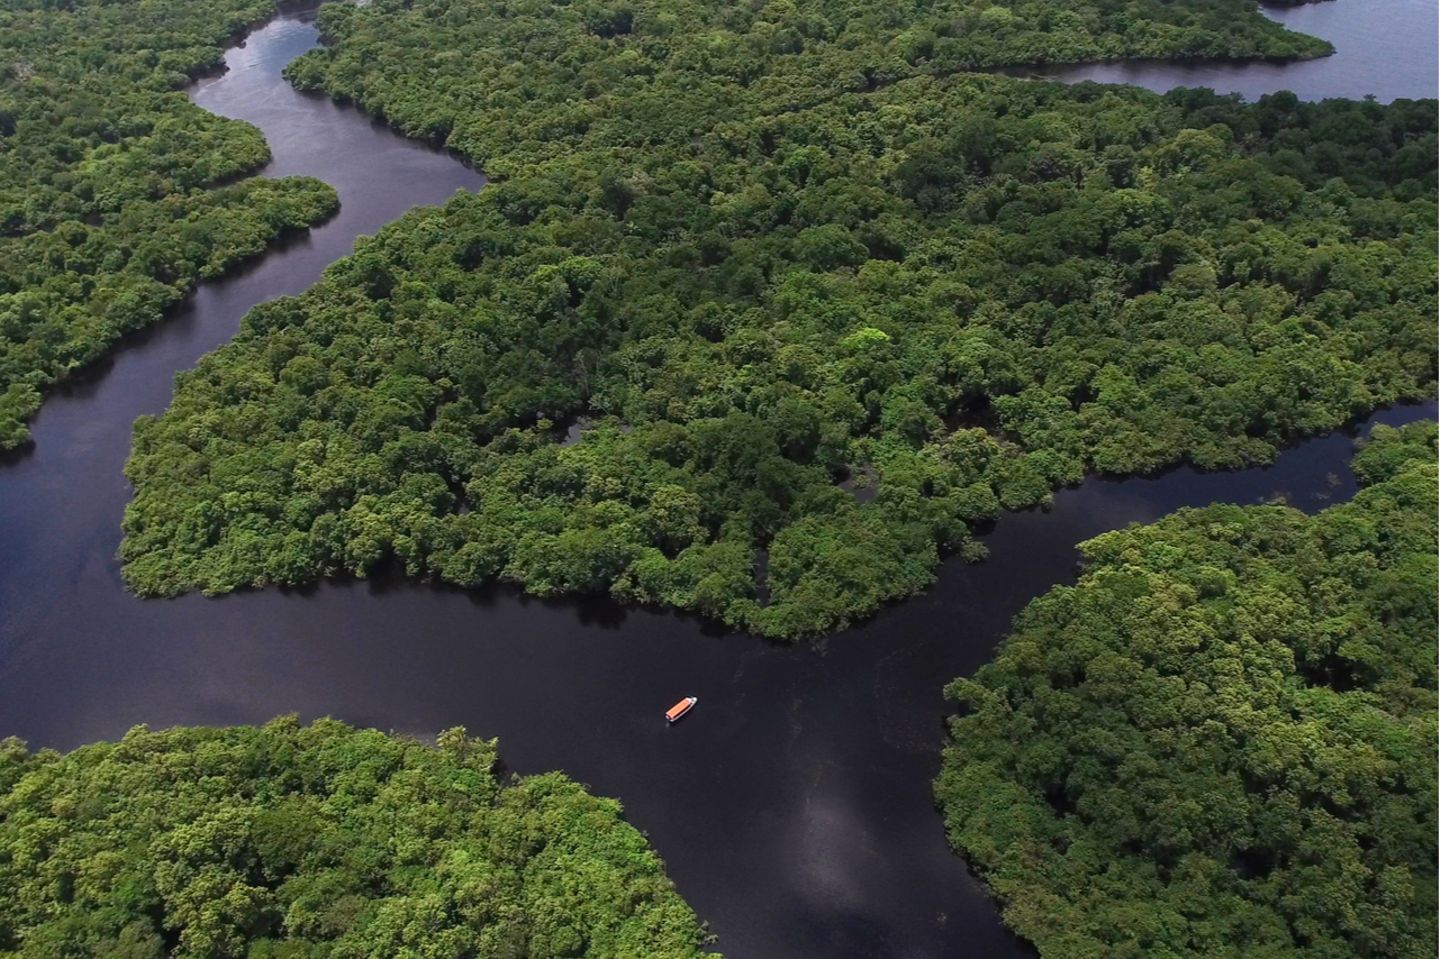 Der Regenwald in Brasilien: Ein Gebiet, das einst als "grüne Lunge" unserer Erde galt, stößt laut neuesten Studien mehr CO2 aus, als es bindet